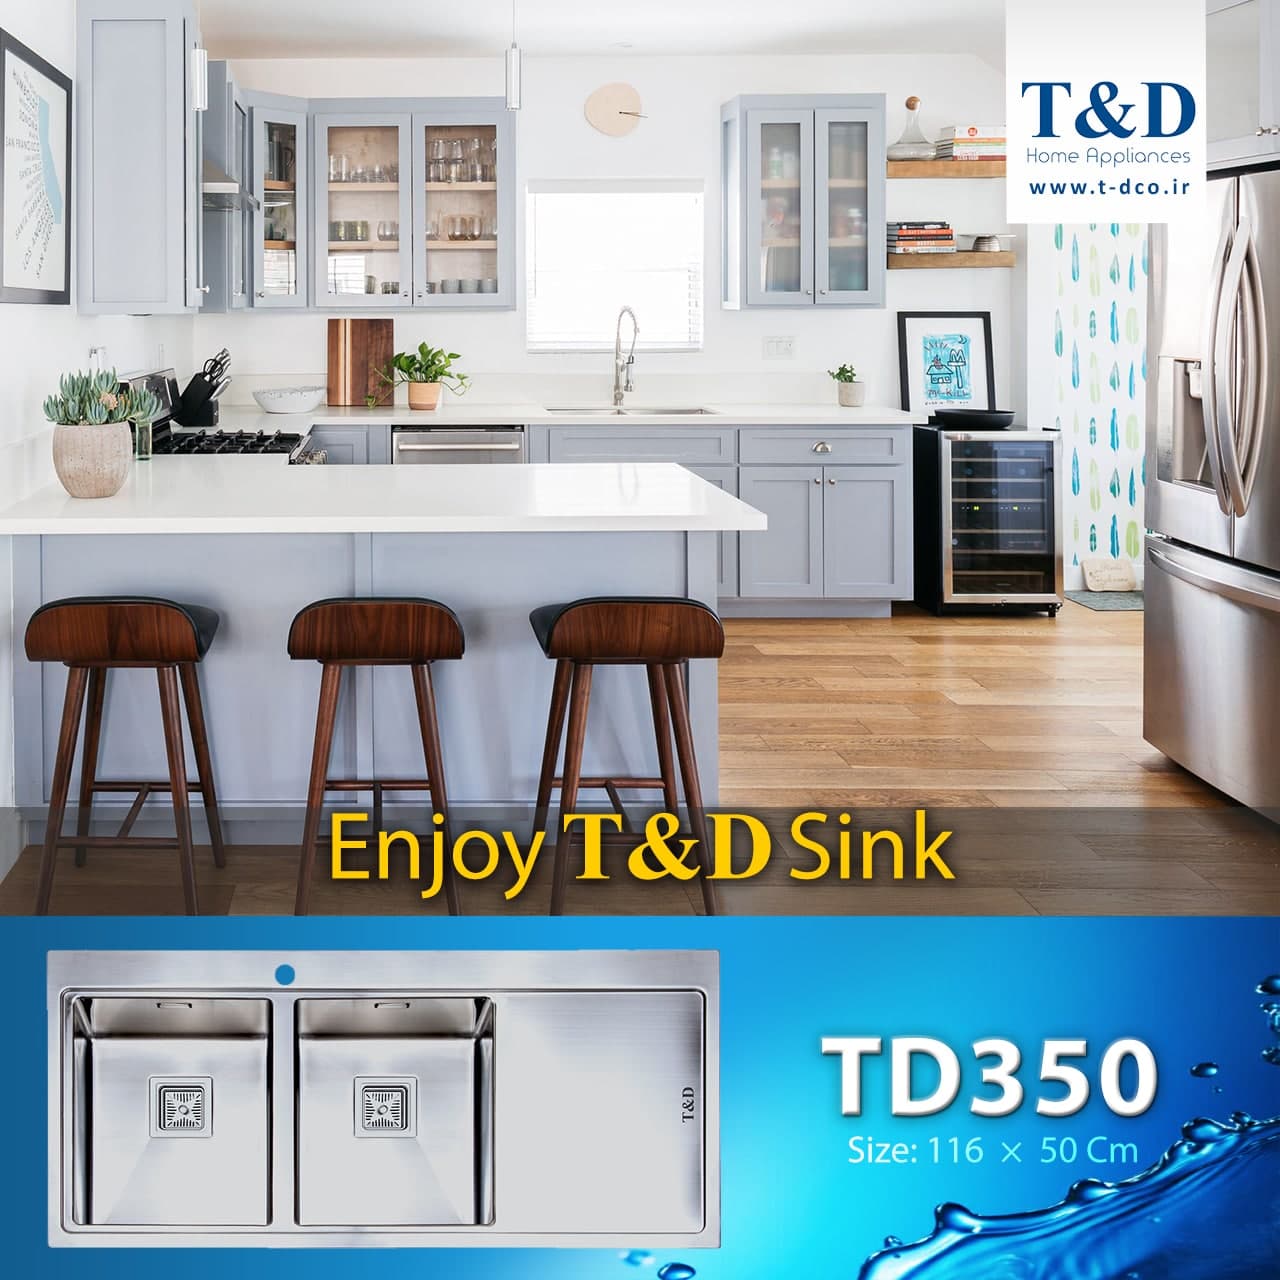 Sink TD350 